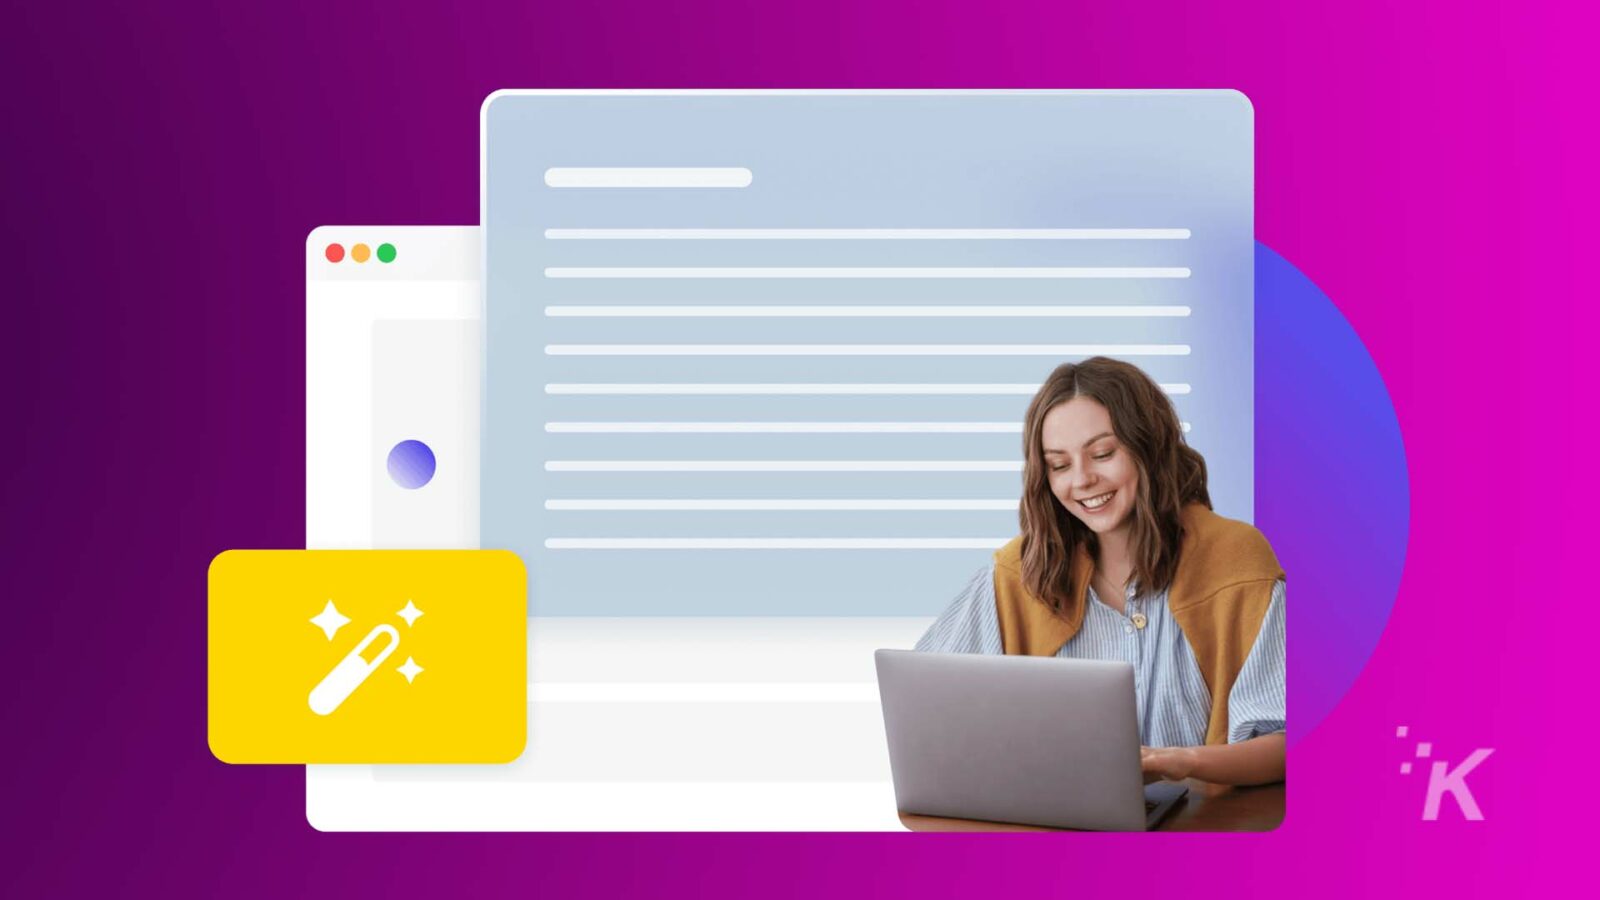 Une personne sourit devant son ordinateur portable avec une superposition graphique impliquant des outils de développement Web, sur un fond violet et bleu vif.